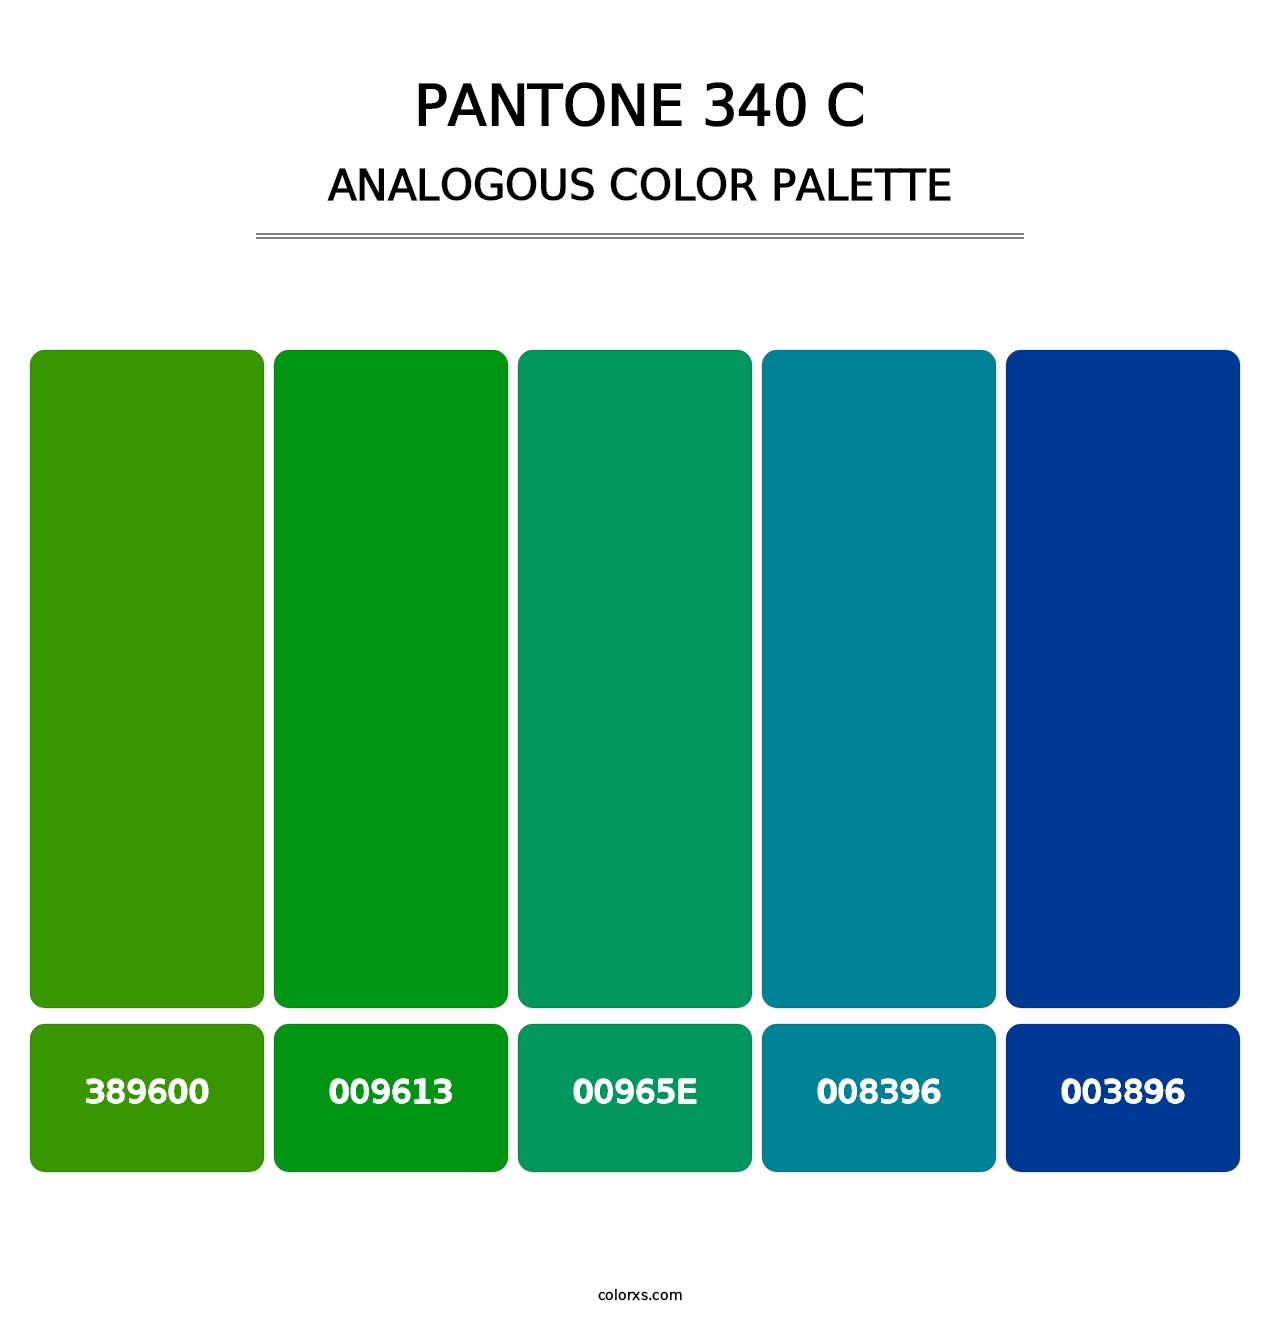 PANTONE 340 C - Analogous Color Palette